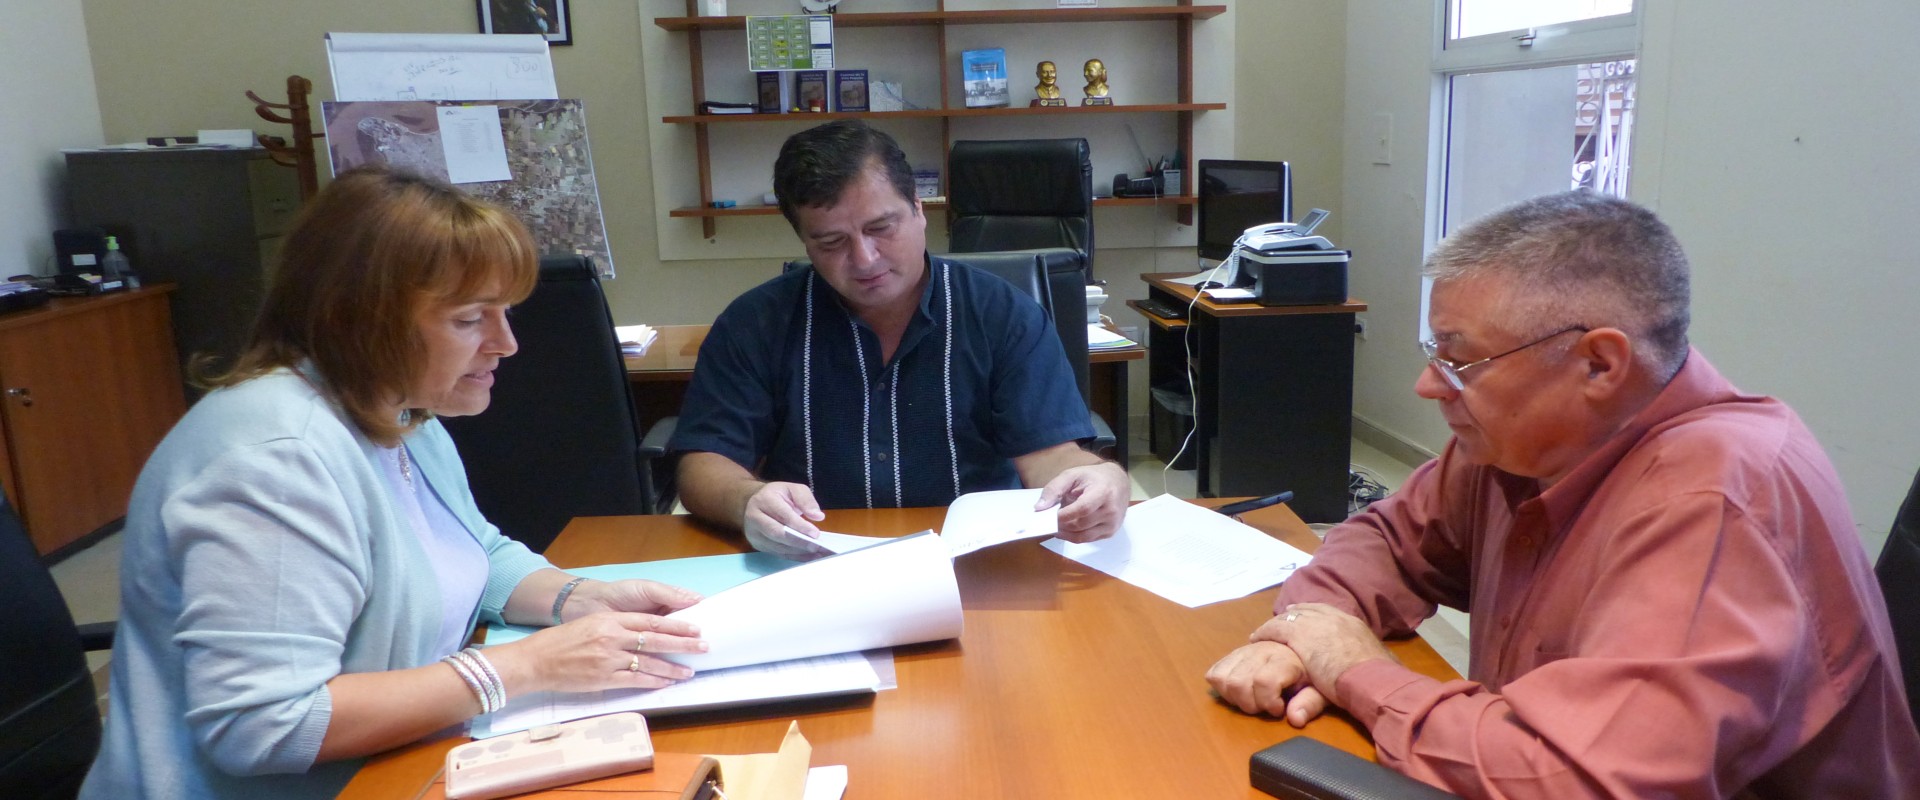 Se construirán nuevas viviendas en San José de Feliciano financiadas por la provincia